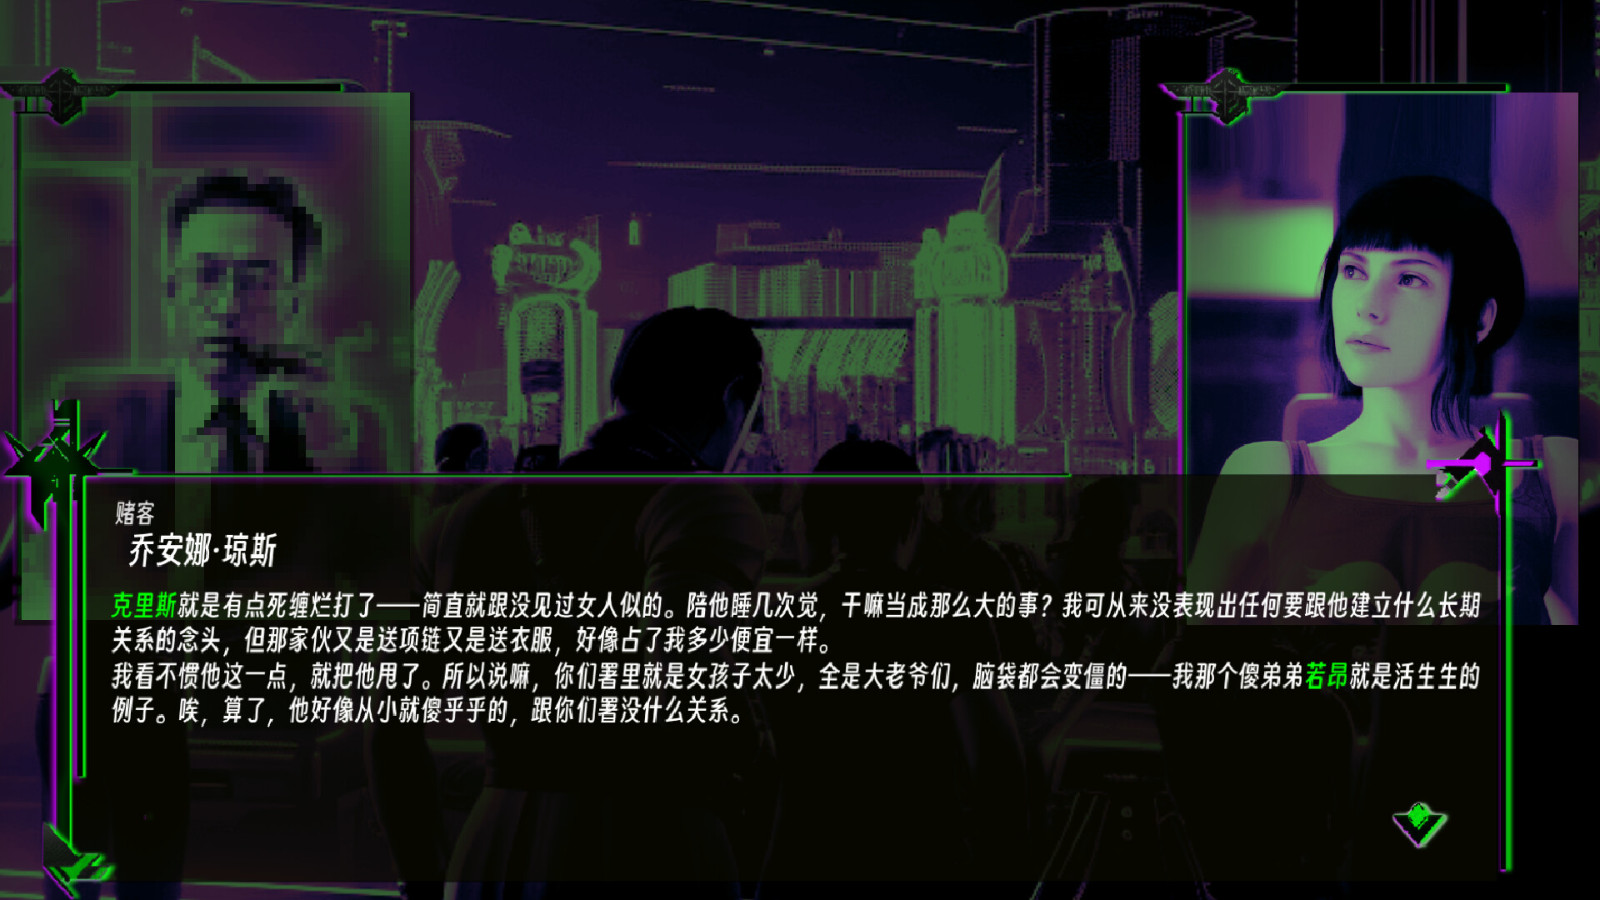 非线性文字冒险游戏《天穹下的格林》Steam页面上线 支持简体中文 二次世界 第7张